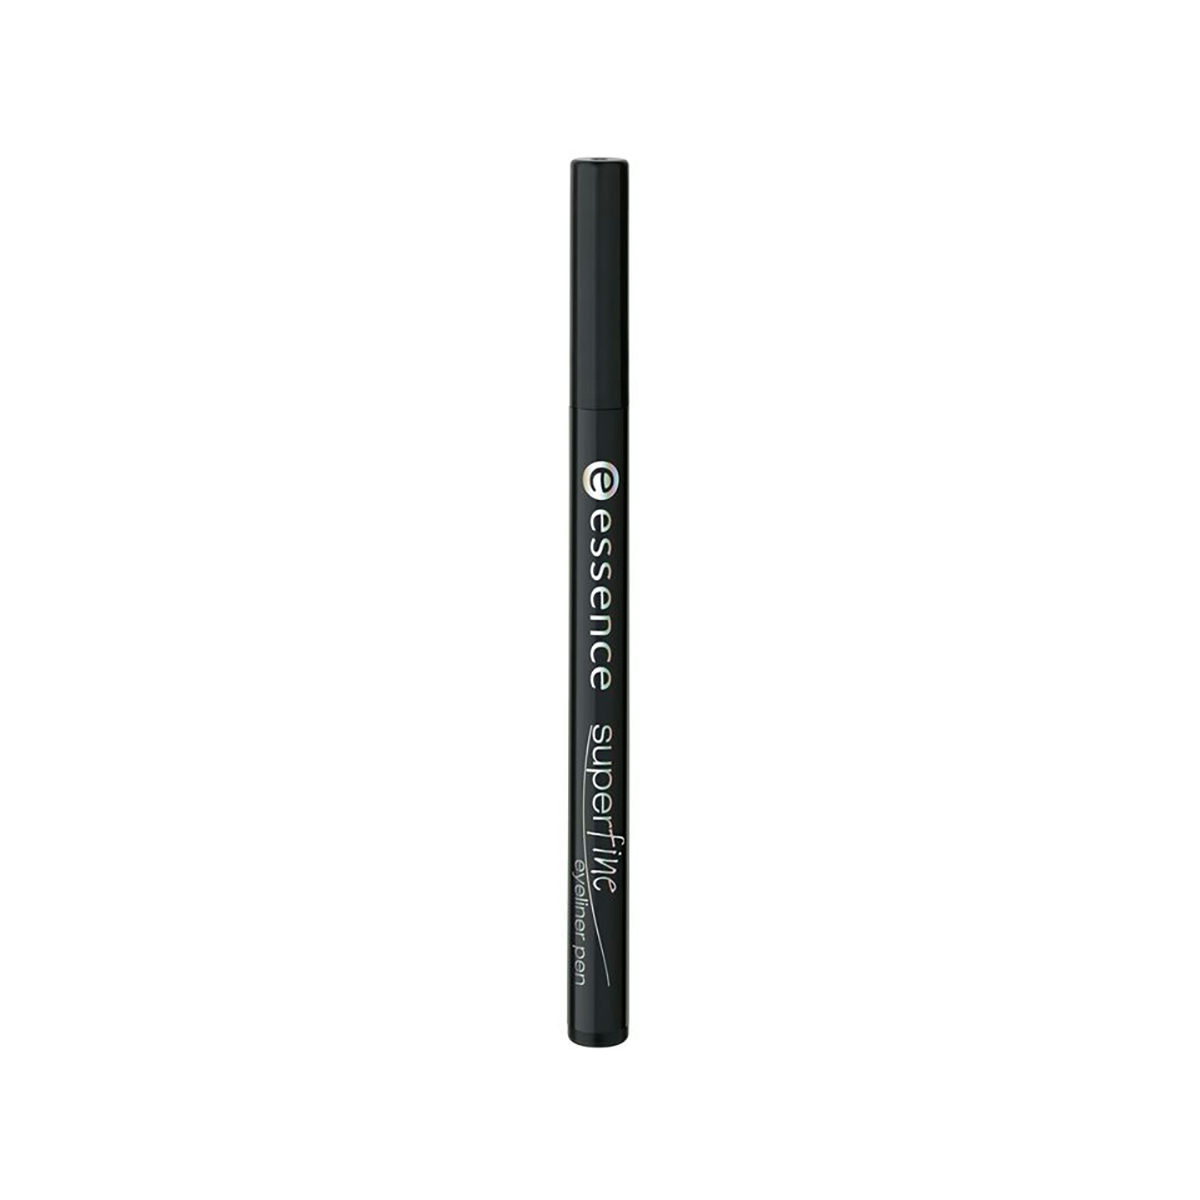 Eyeliner pen super fine 01 ESSENCE 1 ud